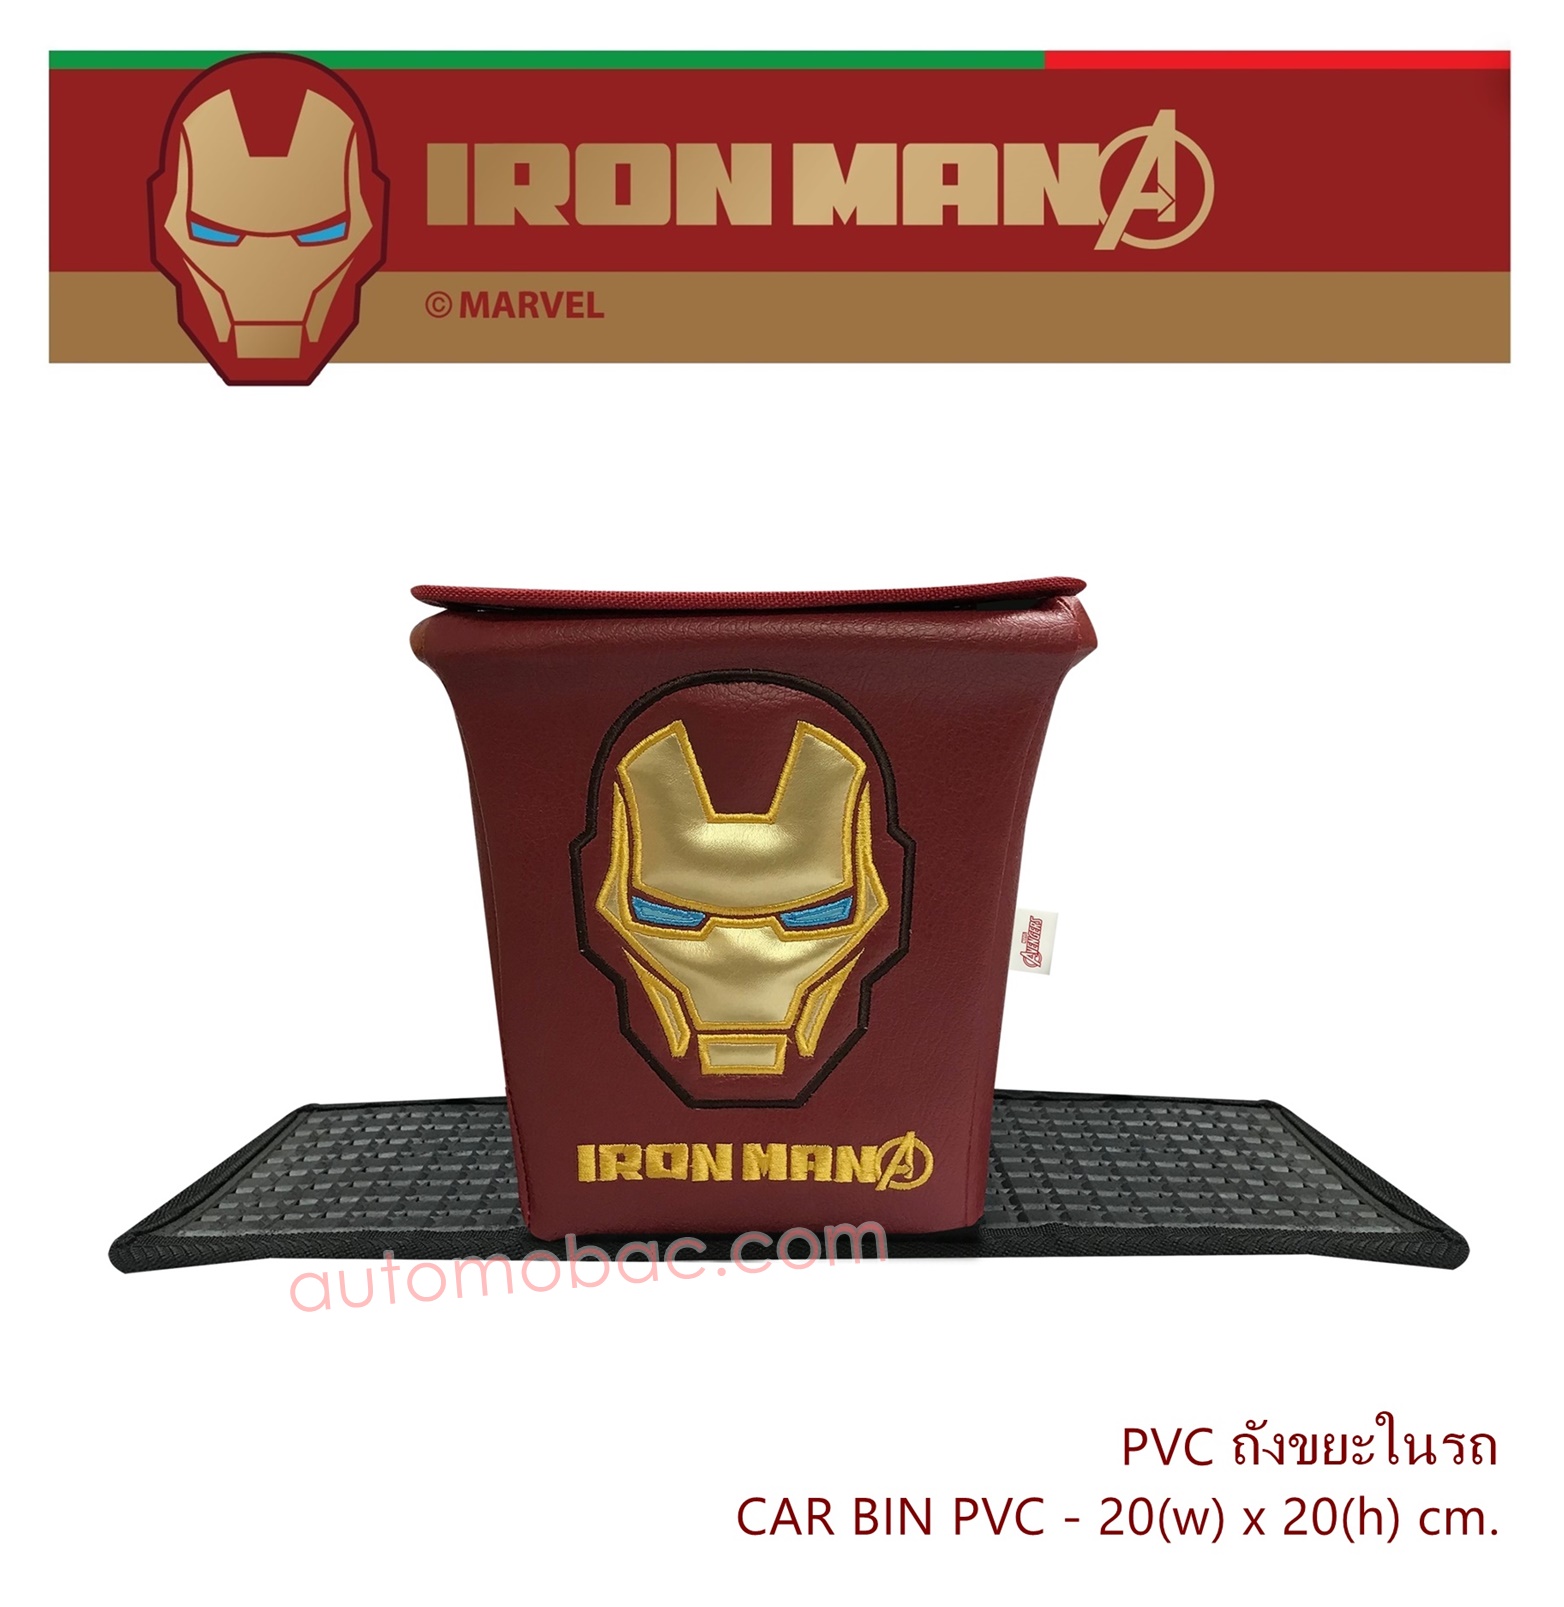 IRON-MAN ถังขยะในรถ PVC ด้านนอกผลิตจาก PVC เกรด A มีแผ่นยางพลาสติก กันลื่น ทำความสะอาดง่าย